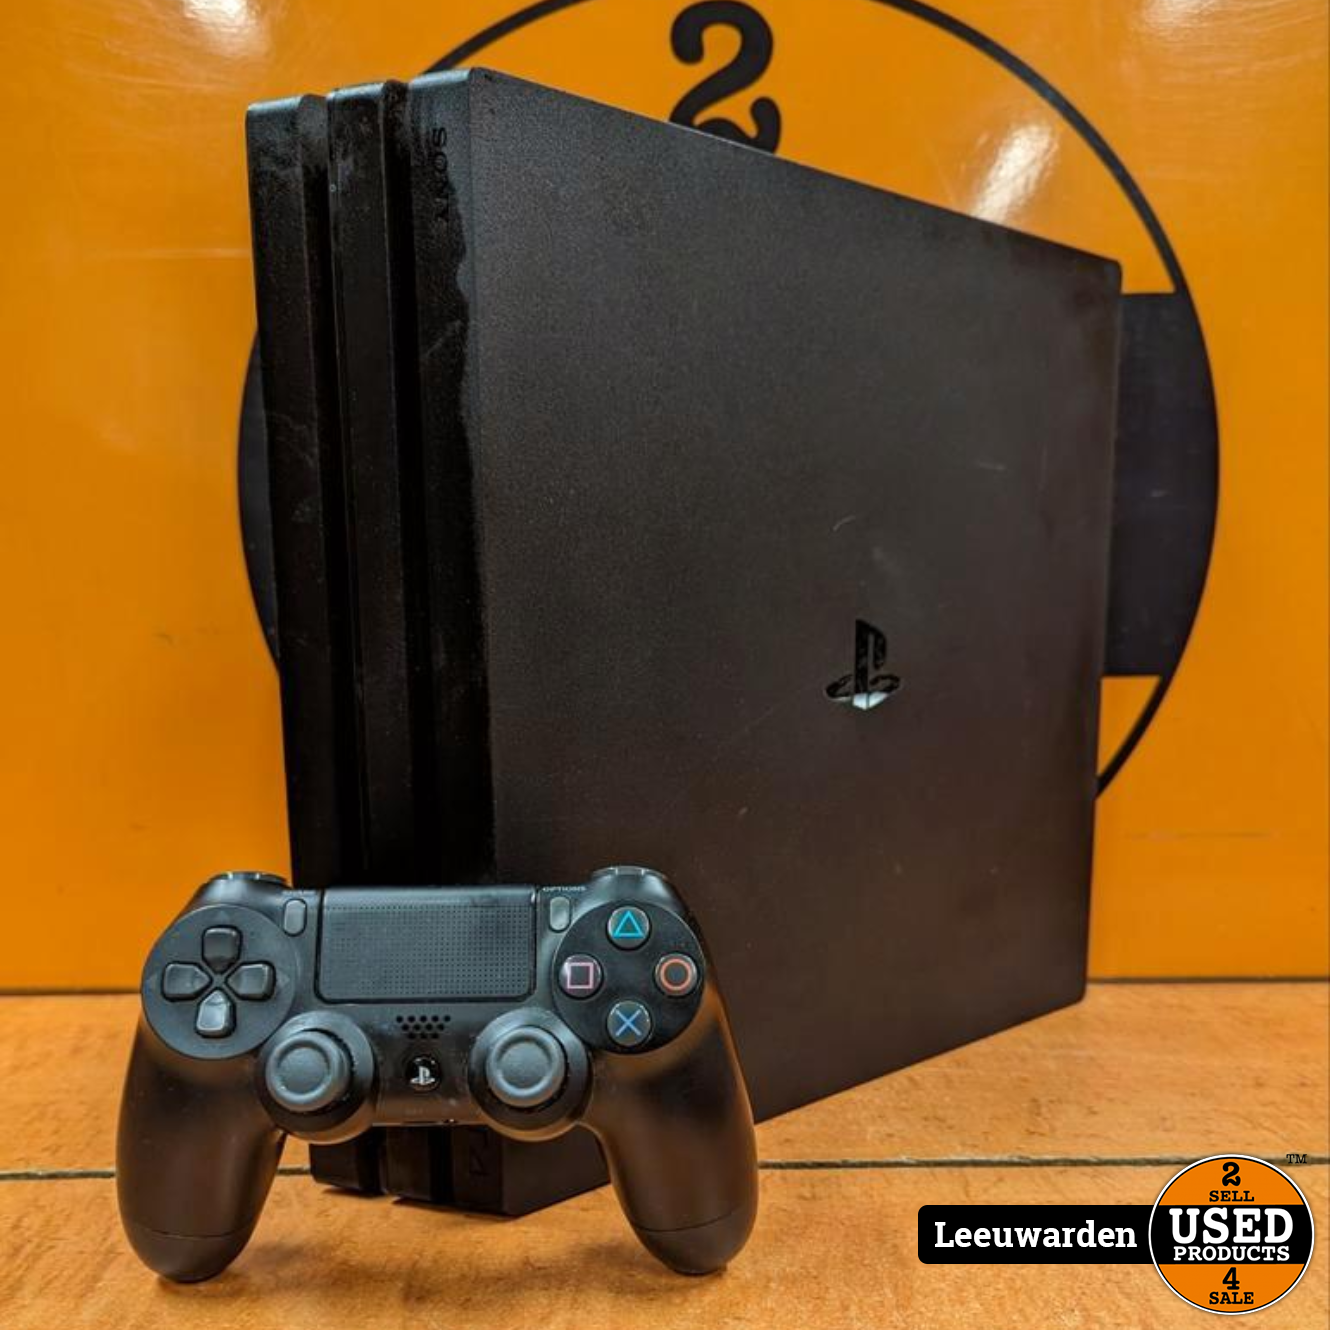 Voordracht voor vertrekken Sony Playstation 4 Pro - 1 TB - Controller - Used Products Leeuwarden